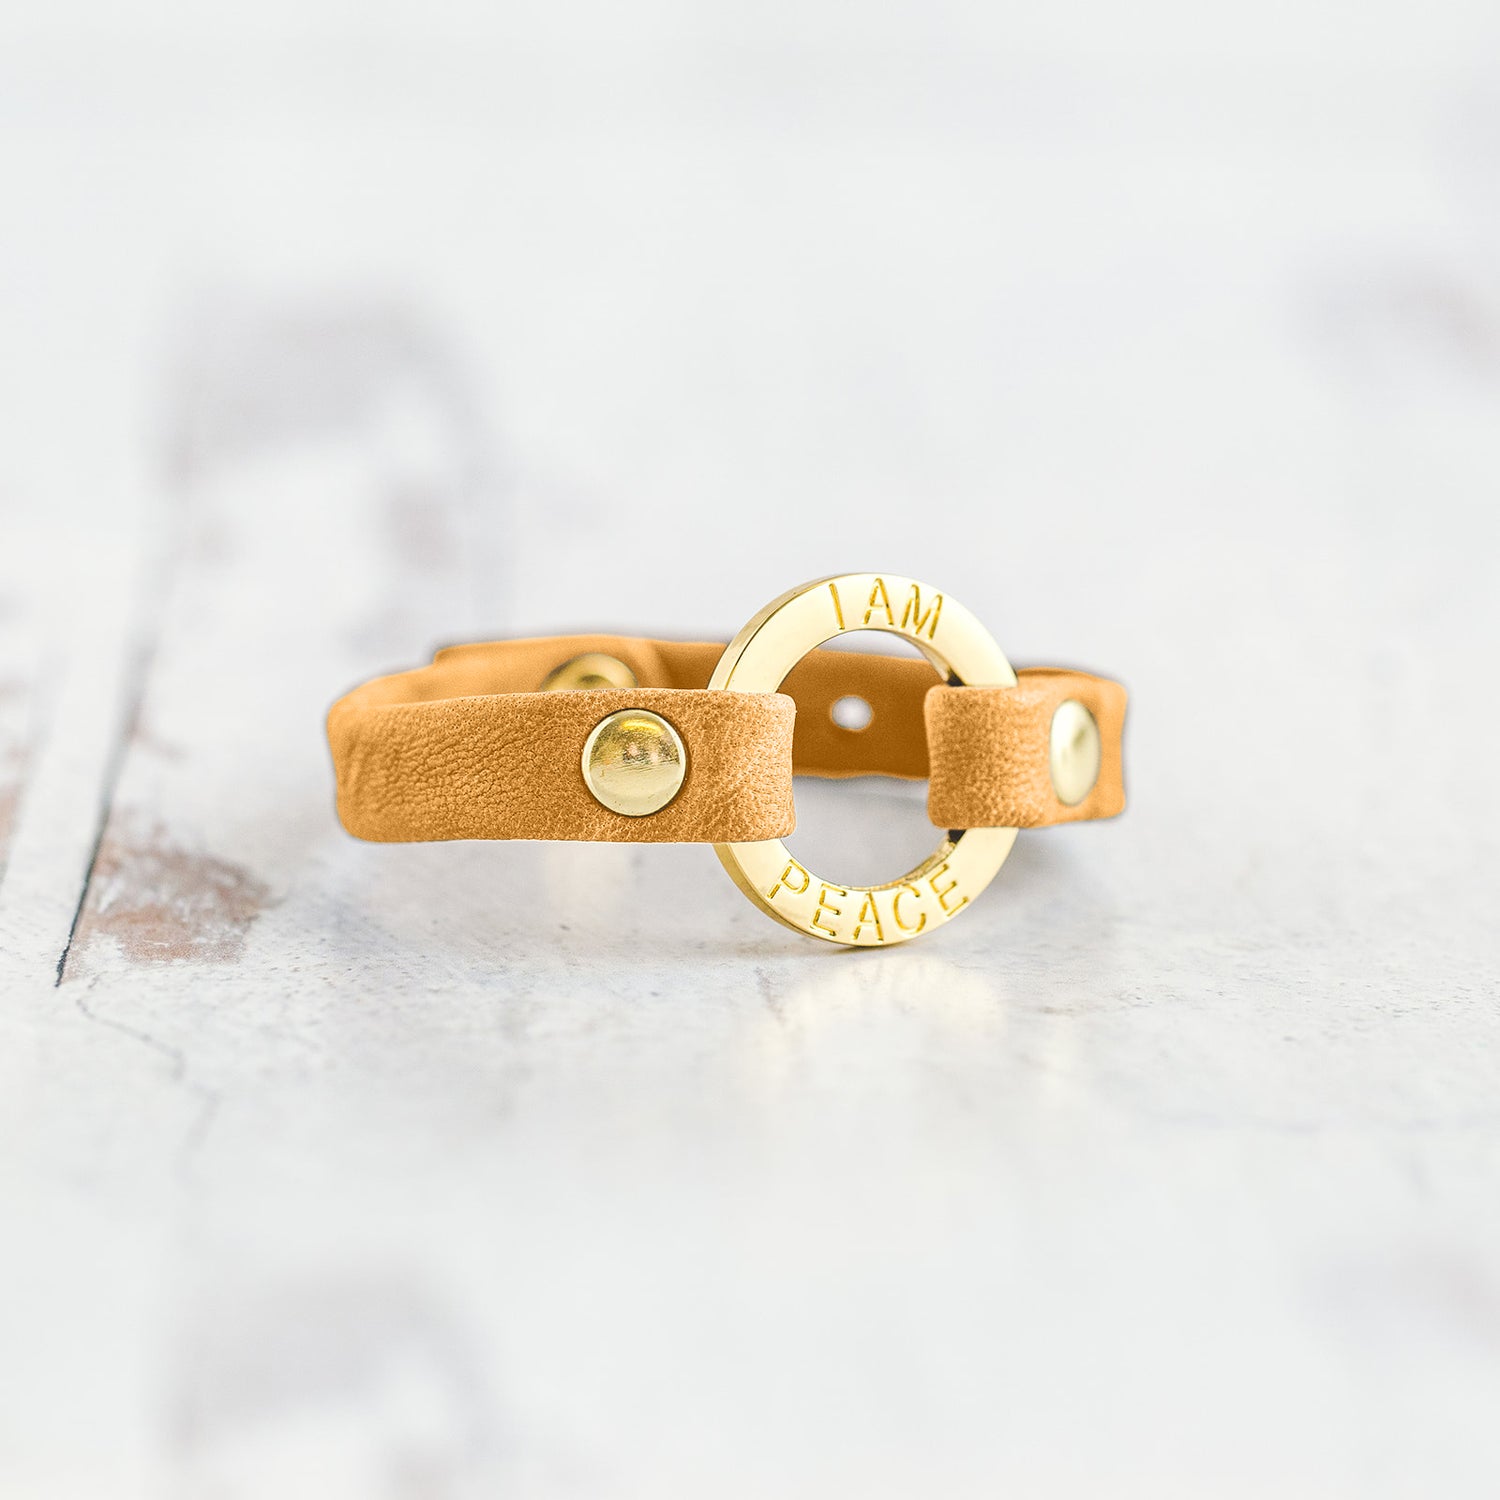 Mantra “ I AM PEACE” Bracelet - Gold